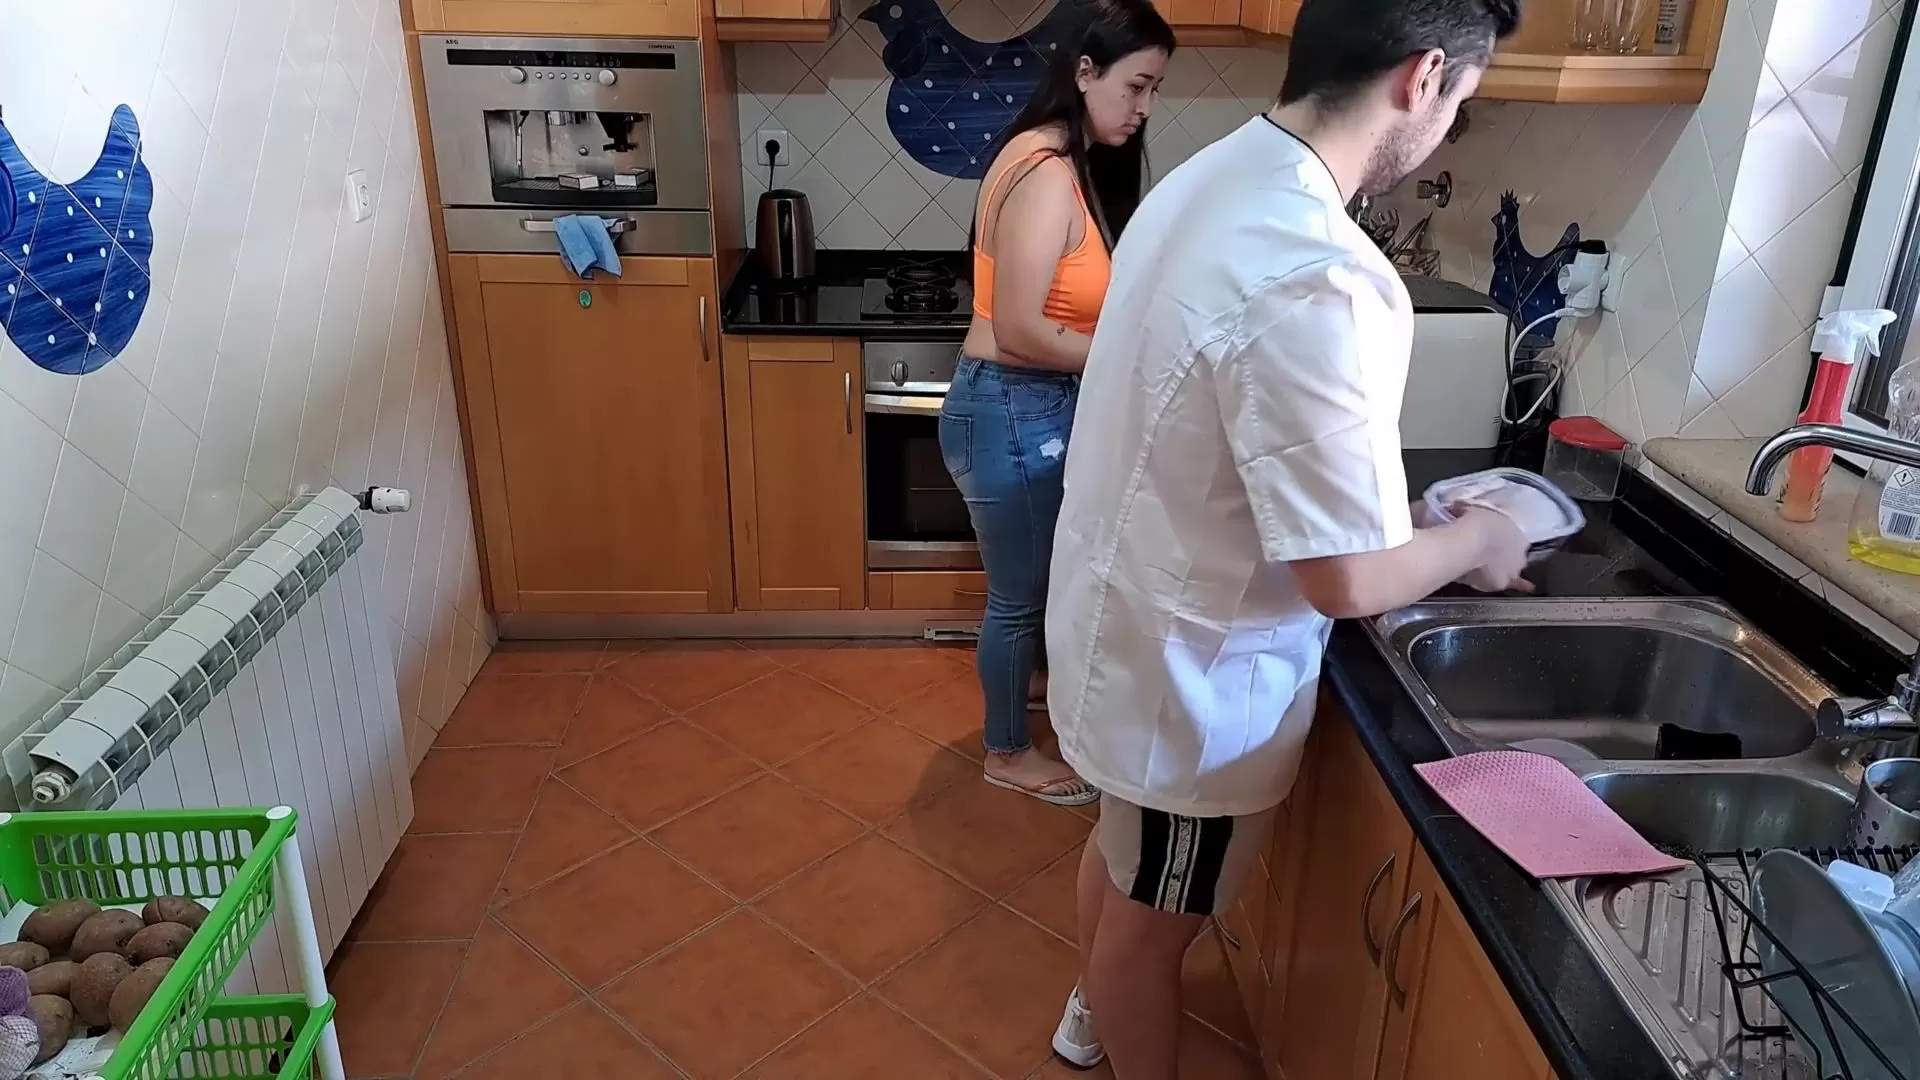 La moglie copula lo chef durante il corso di cucina e sborra più volte guarda online